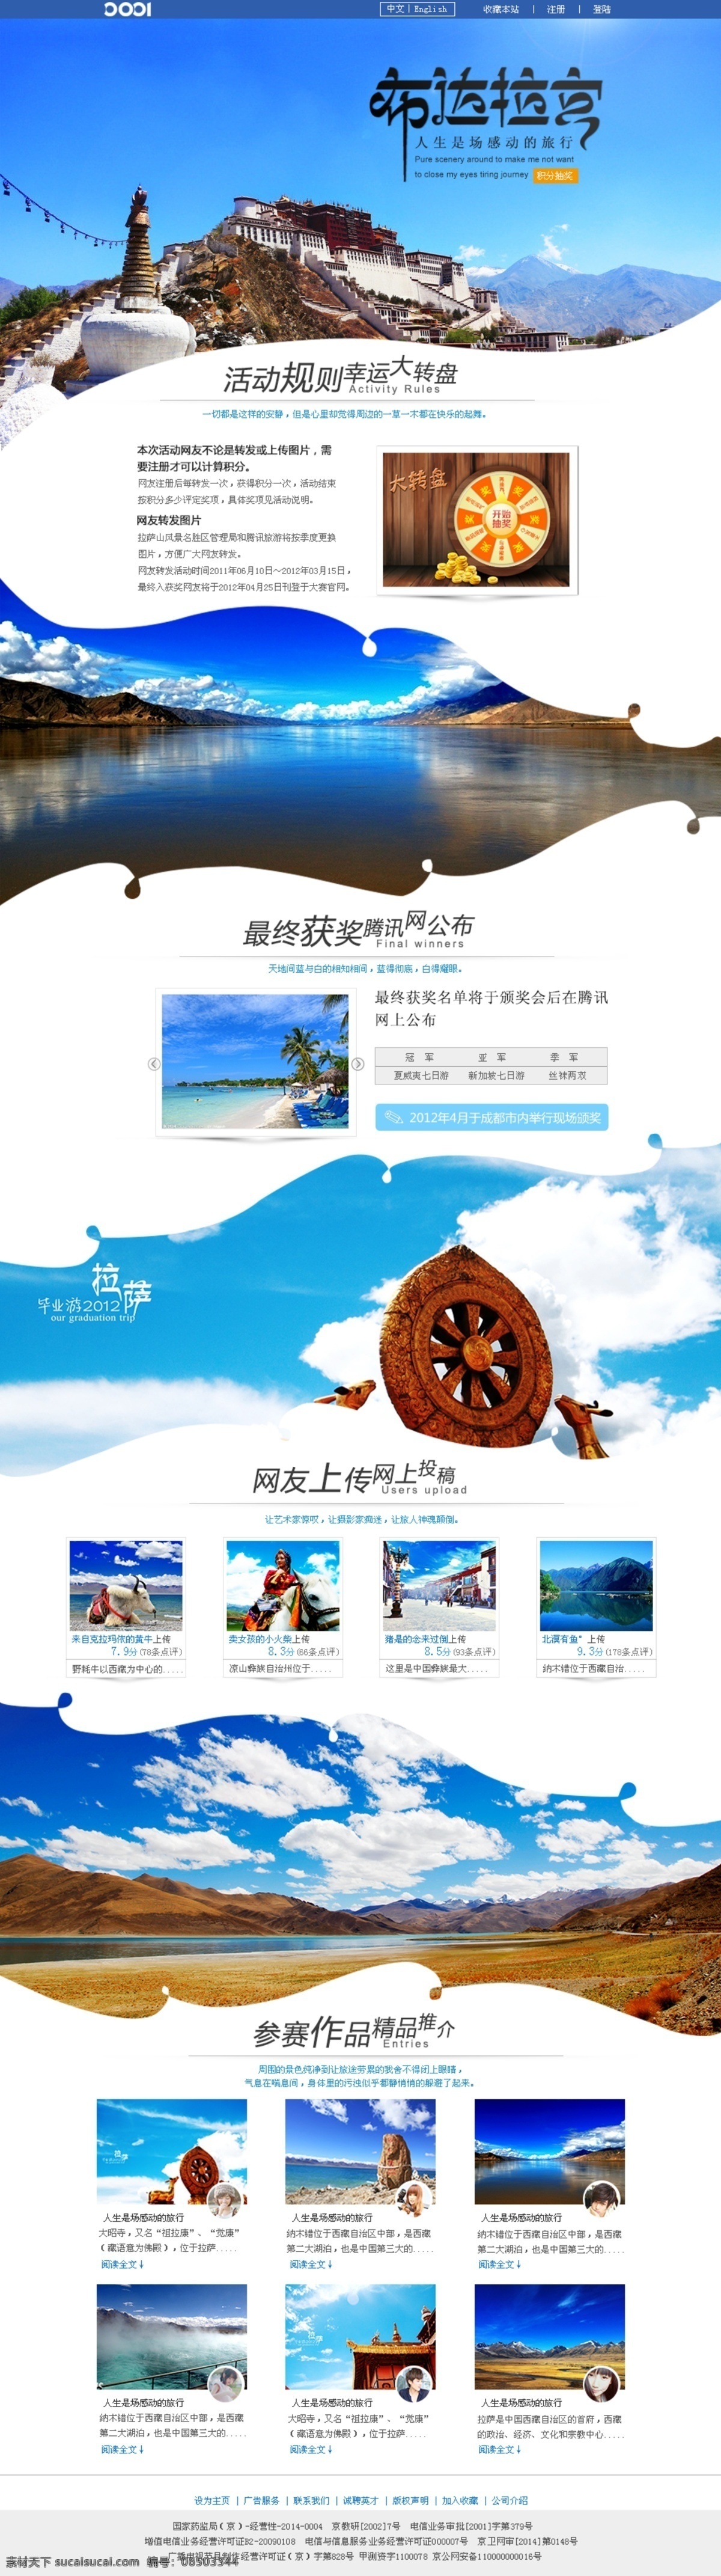 拉萨 布达拉宫 旅游网 专题 网 专题网 原创网页设计 web 界面设计 中文模板